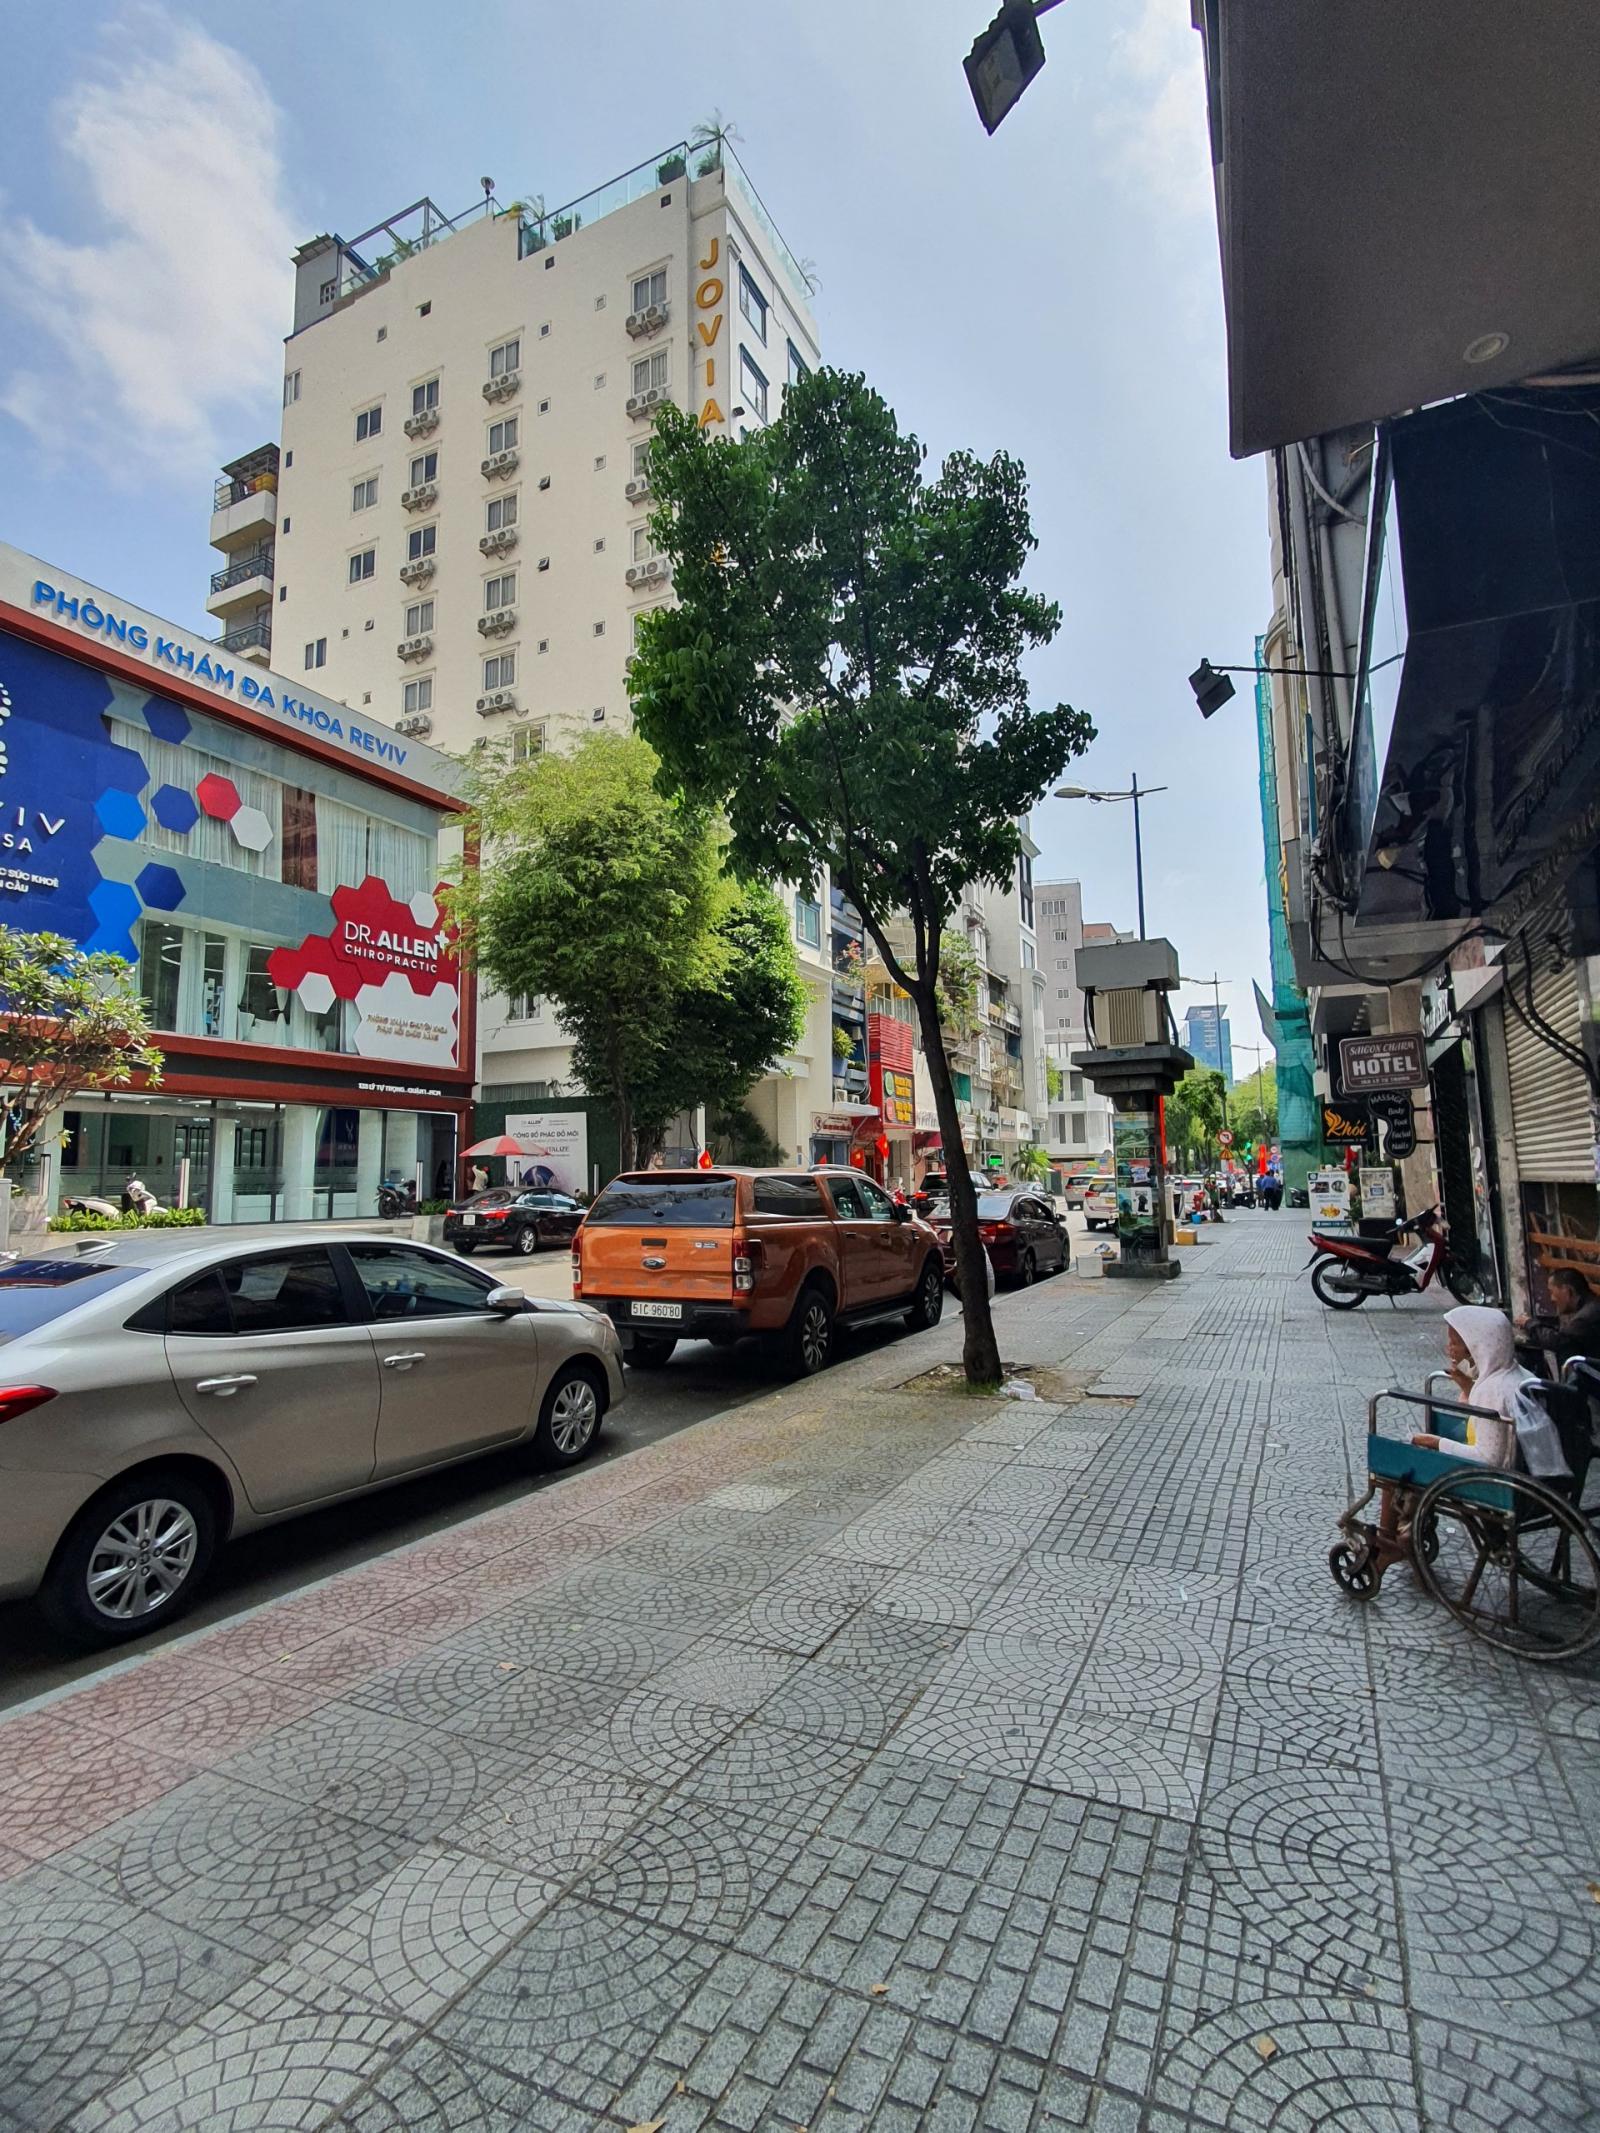 Chuyển nhượng khách sạn 4 sao Golden Hotel Central Saigon 140 Lý Tự Trọng Quận 1 giá 980 tỷ